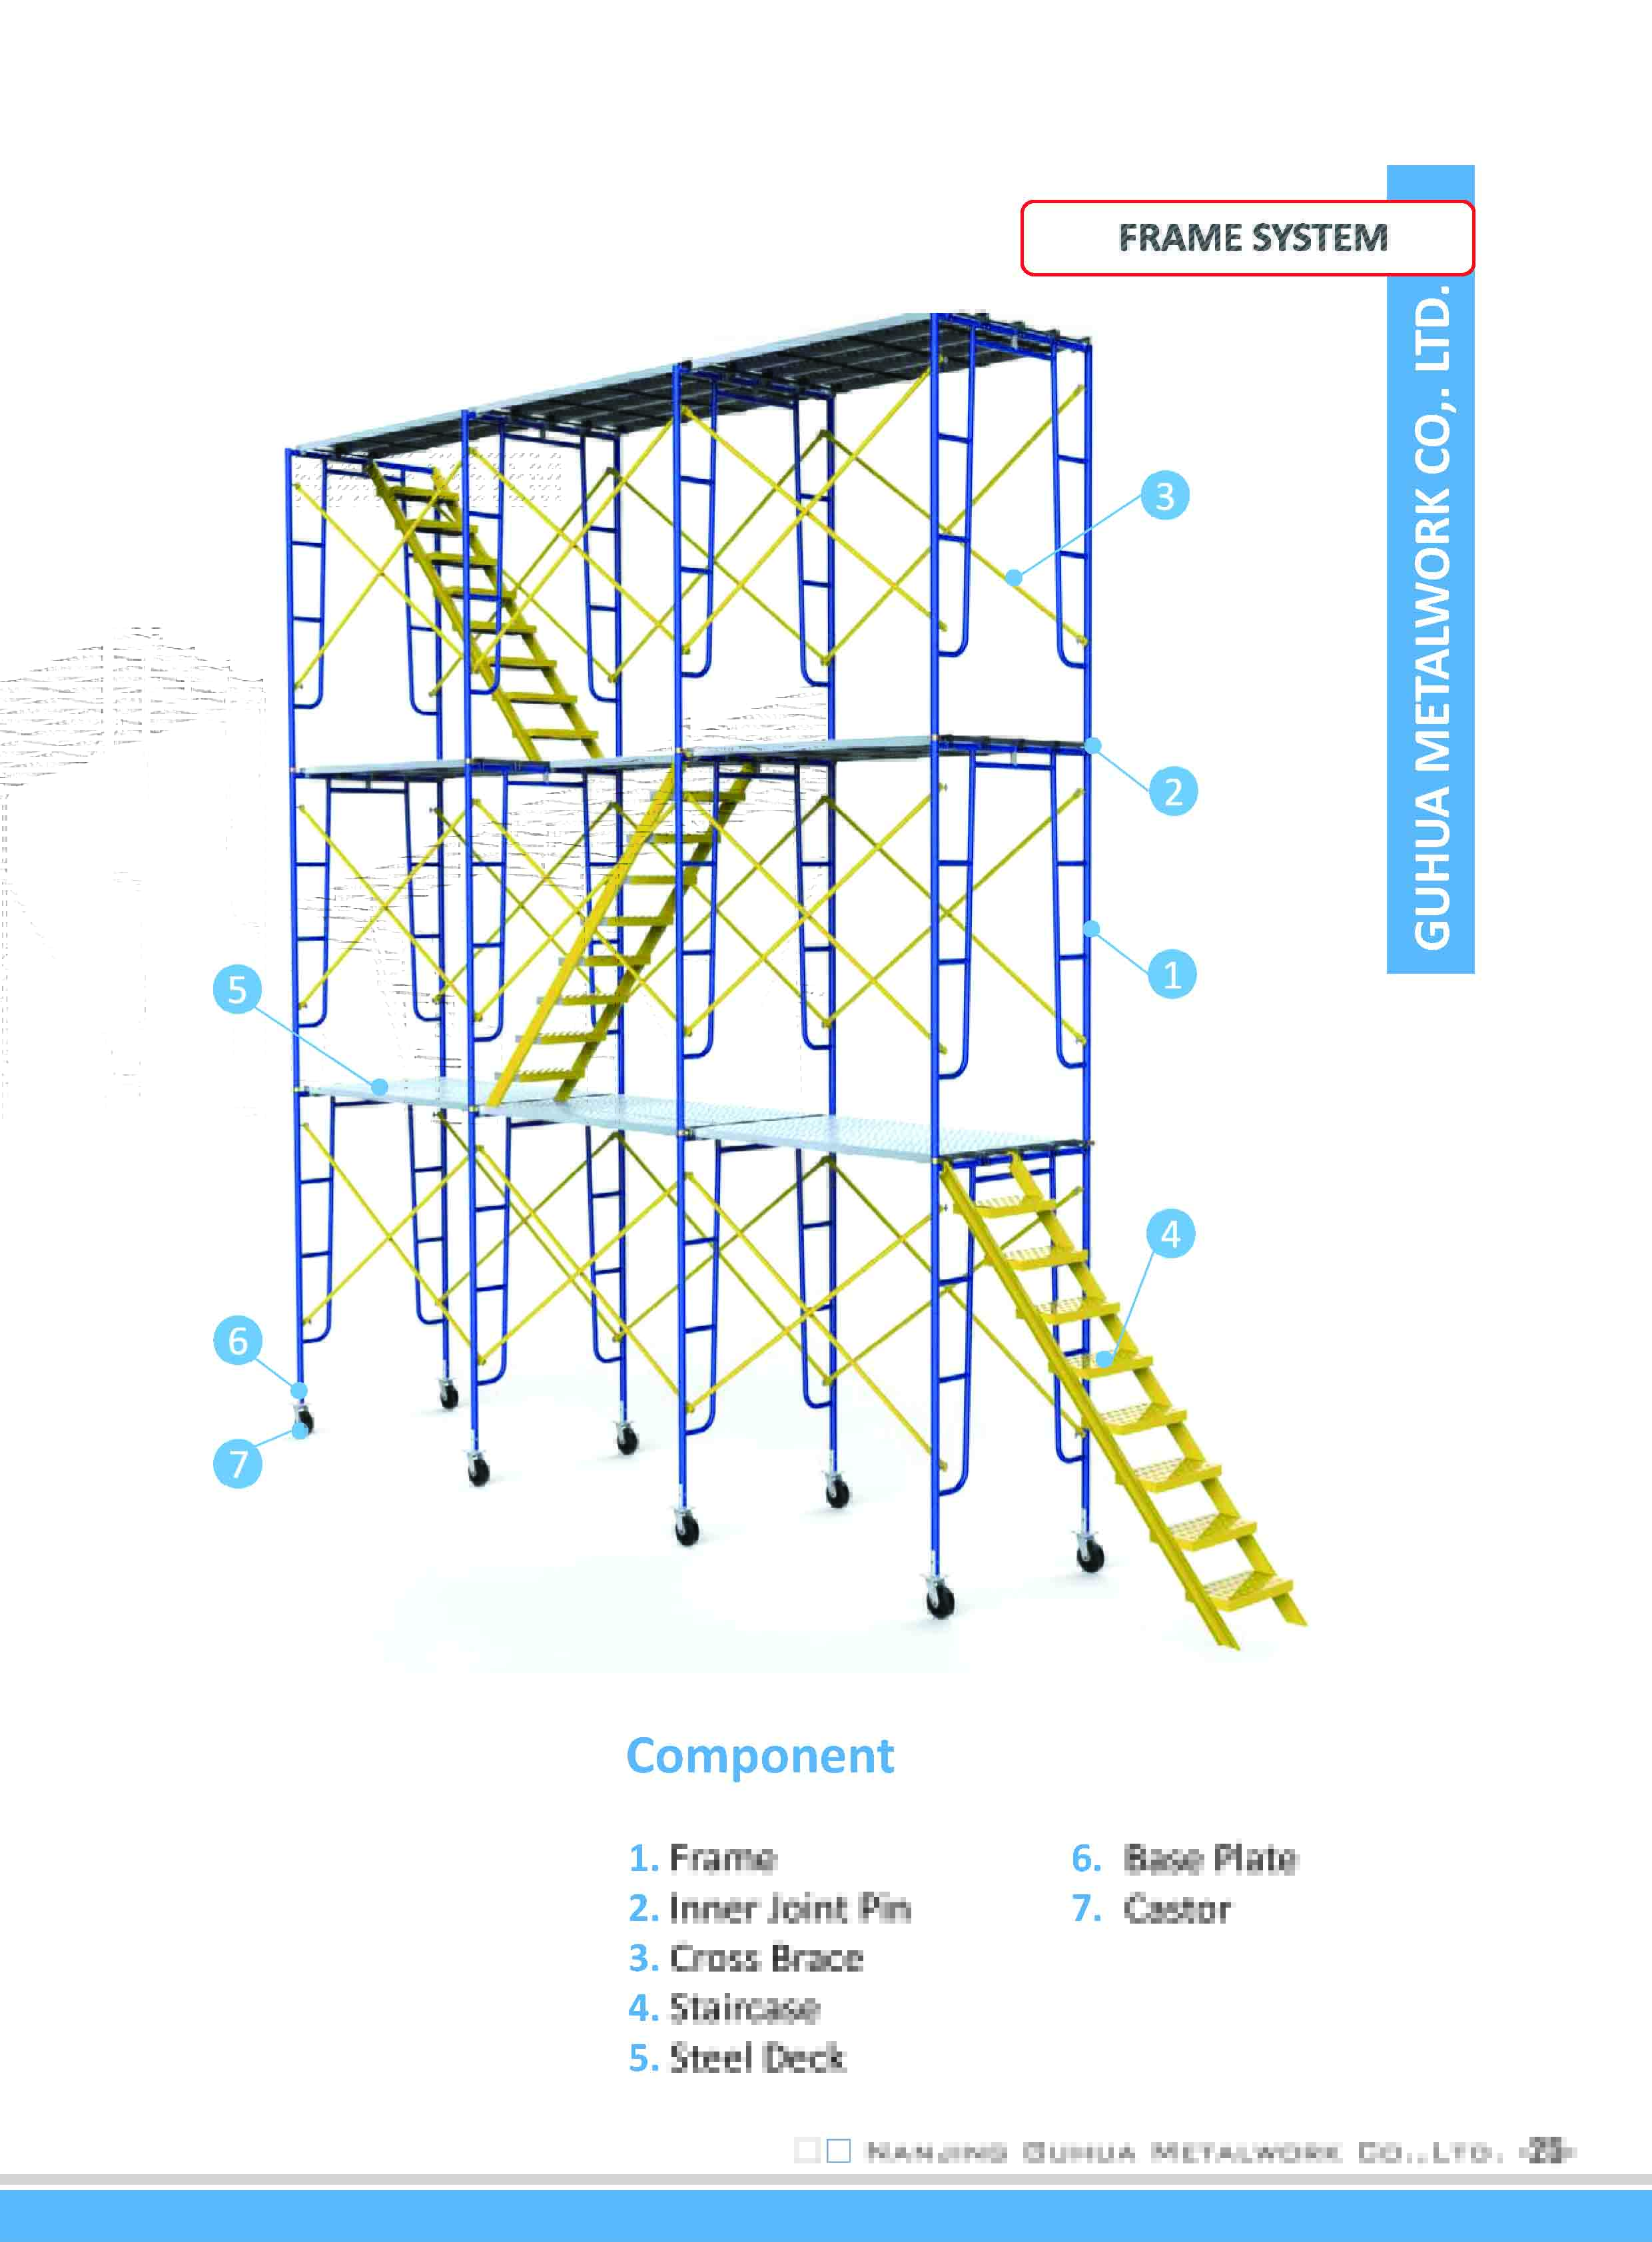 NGM_Frame scaffolding_Mason_Walkthrough_shoring_frame25